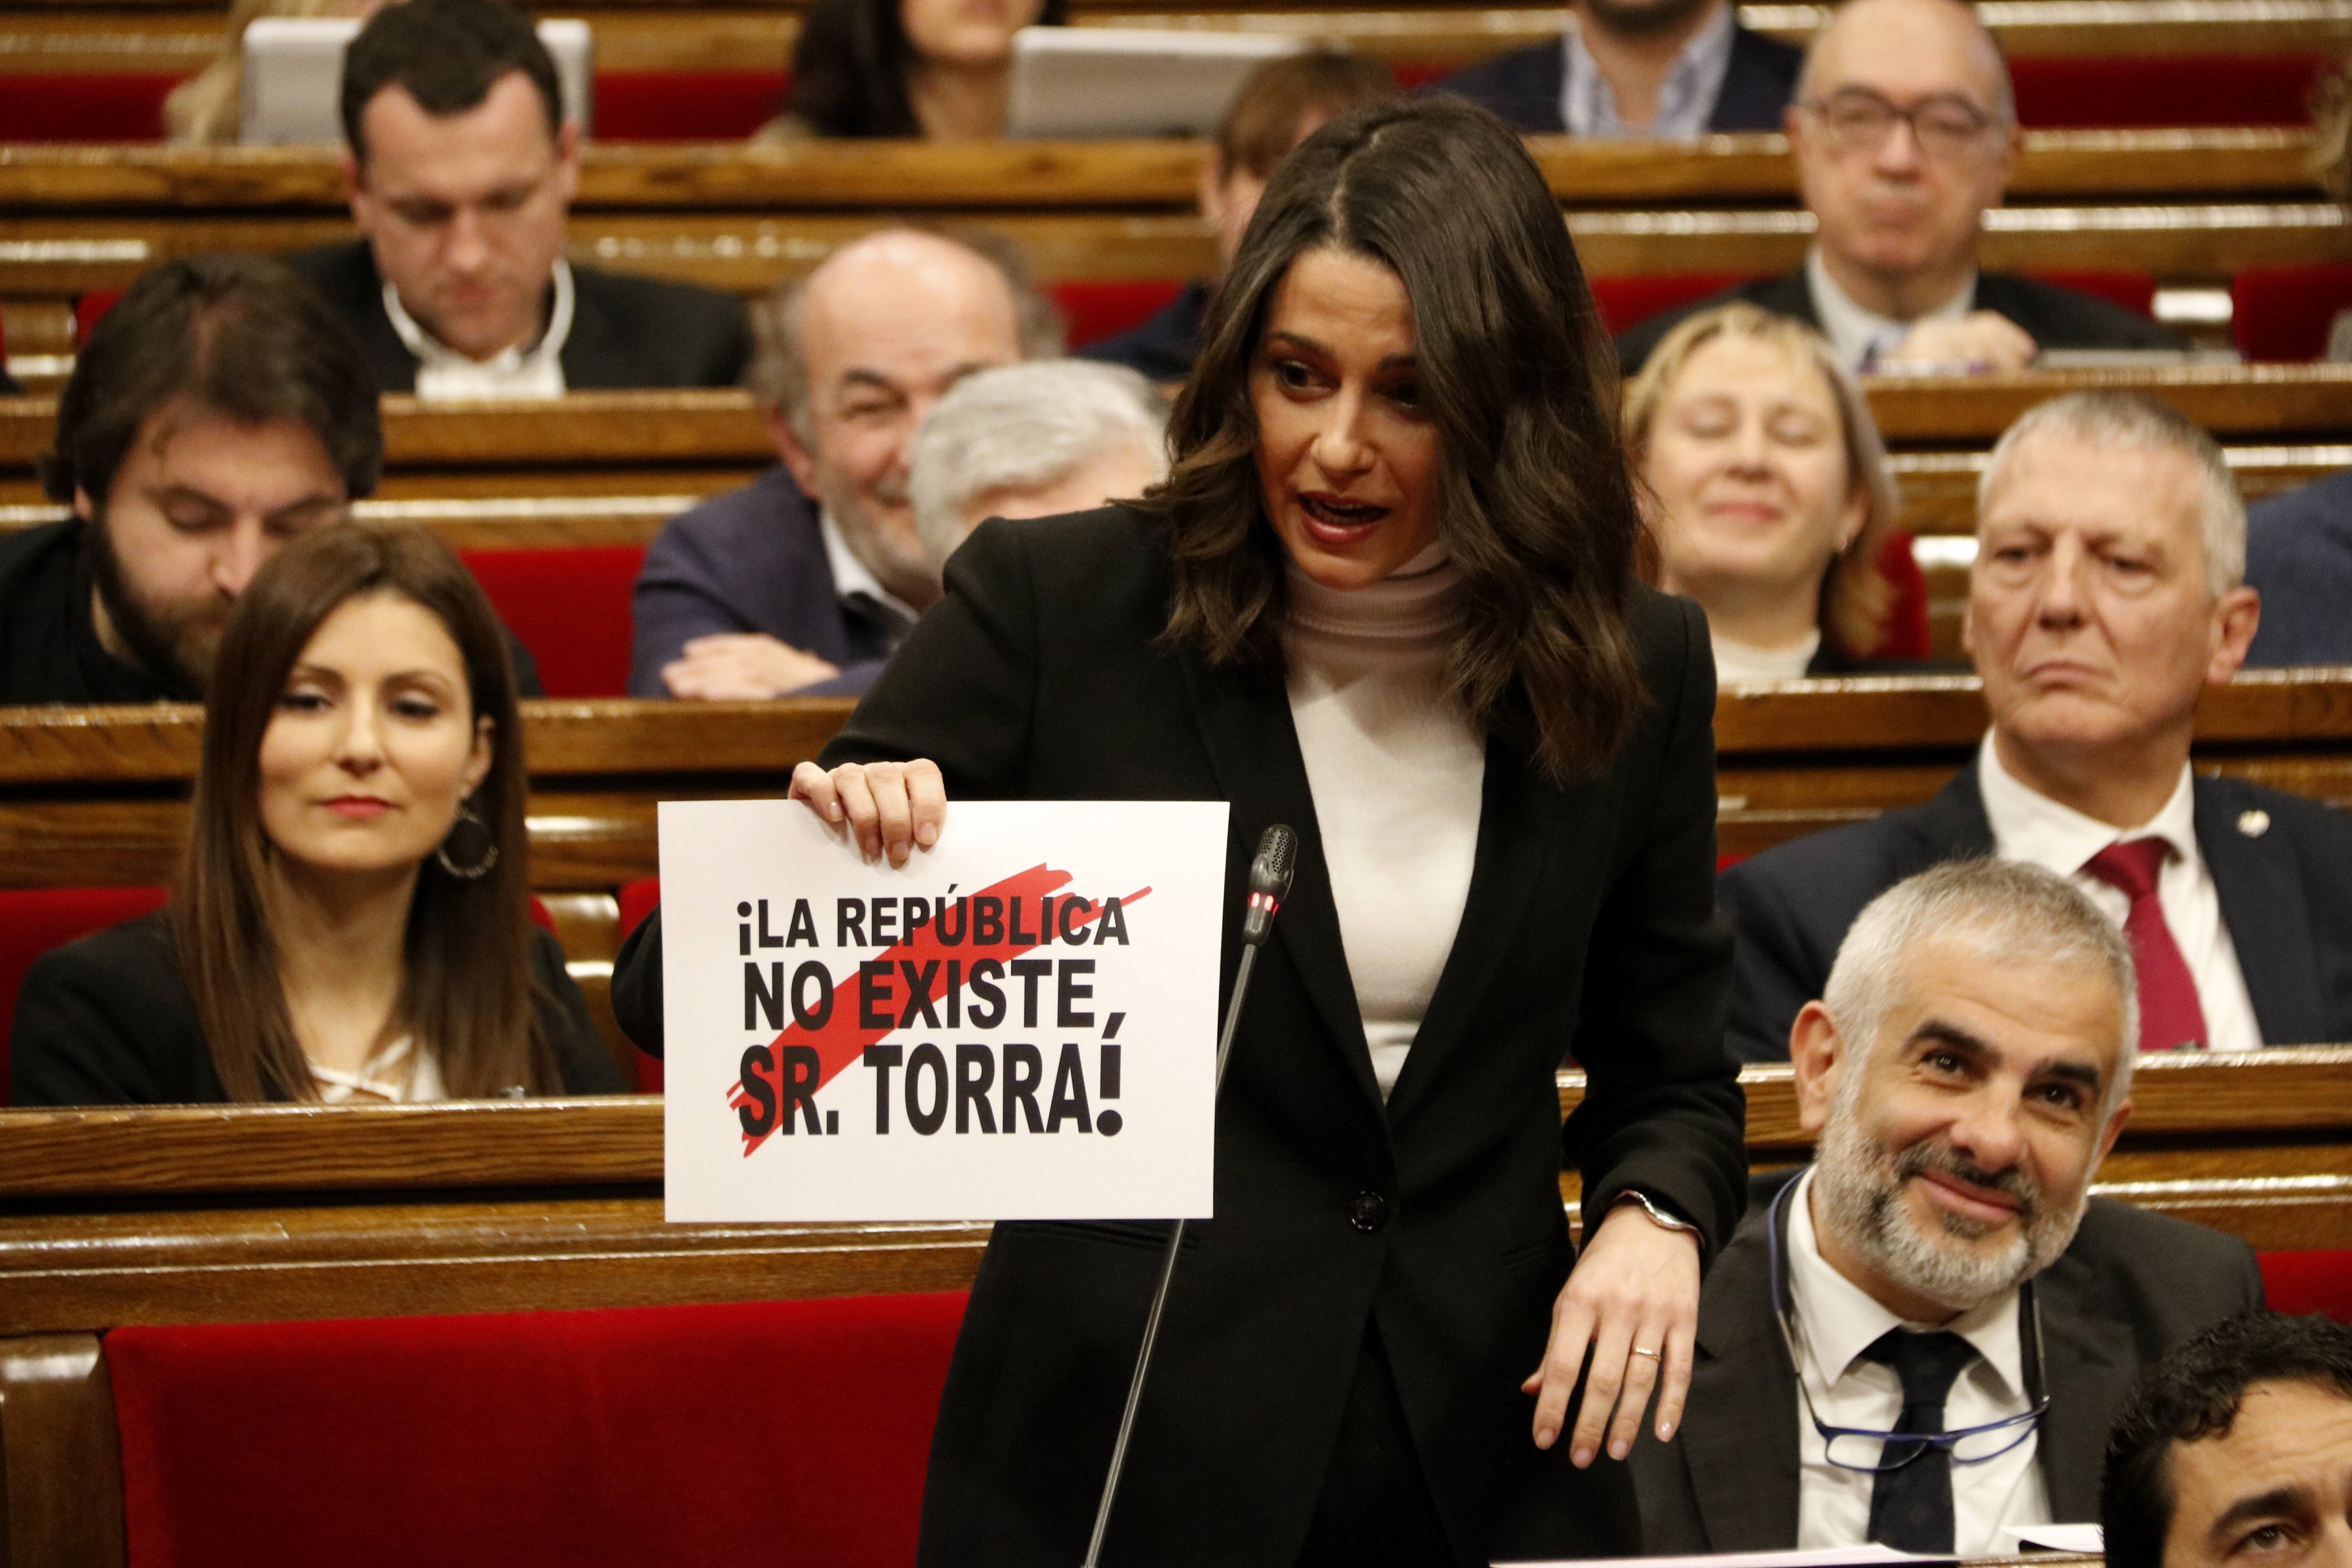 Torra ridiculitza els cartells d'Arrimadas al ple: "naugurada la nova temporada"